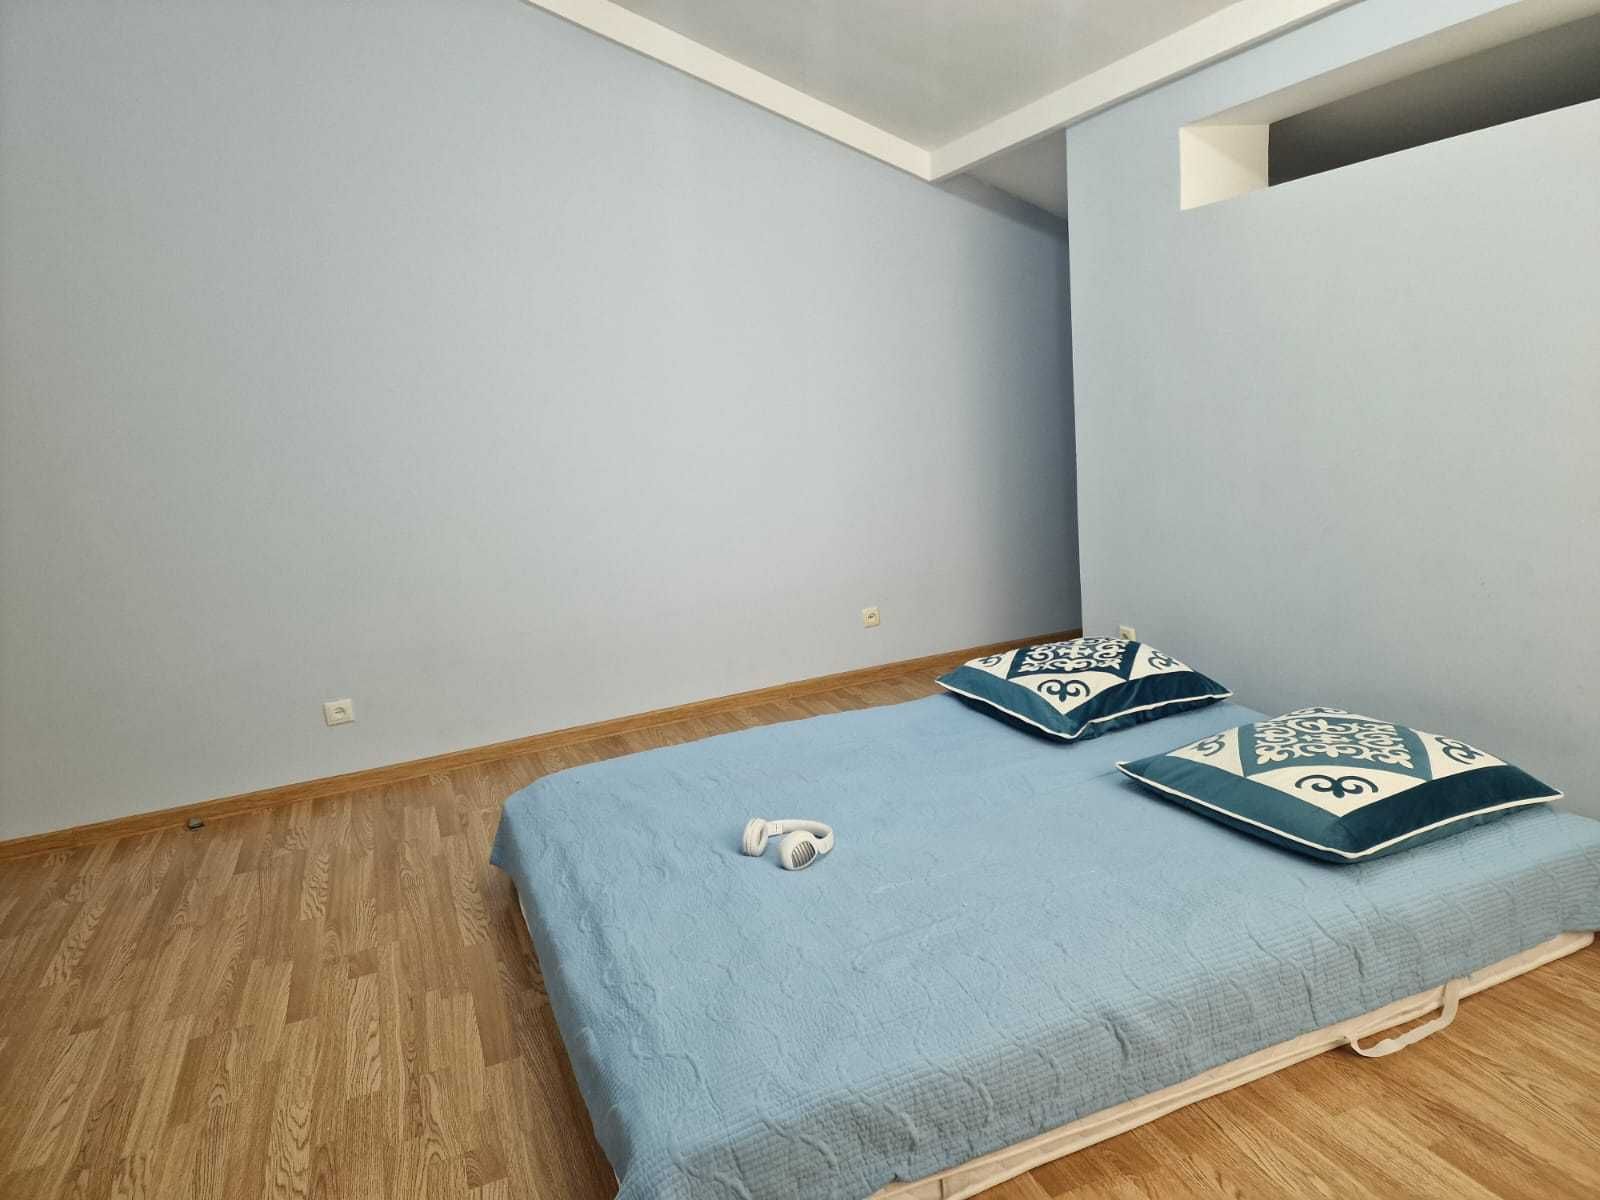 Квартира 3-х комнатная двухуровневая на набережной в Астане кирпичный